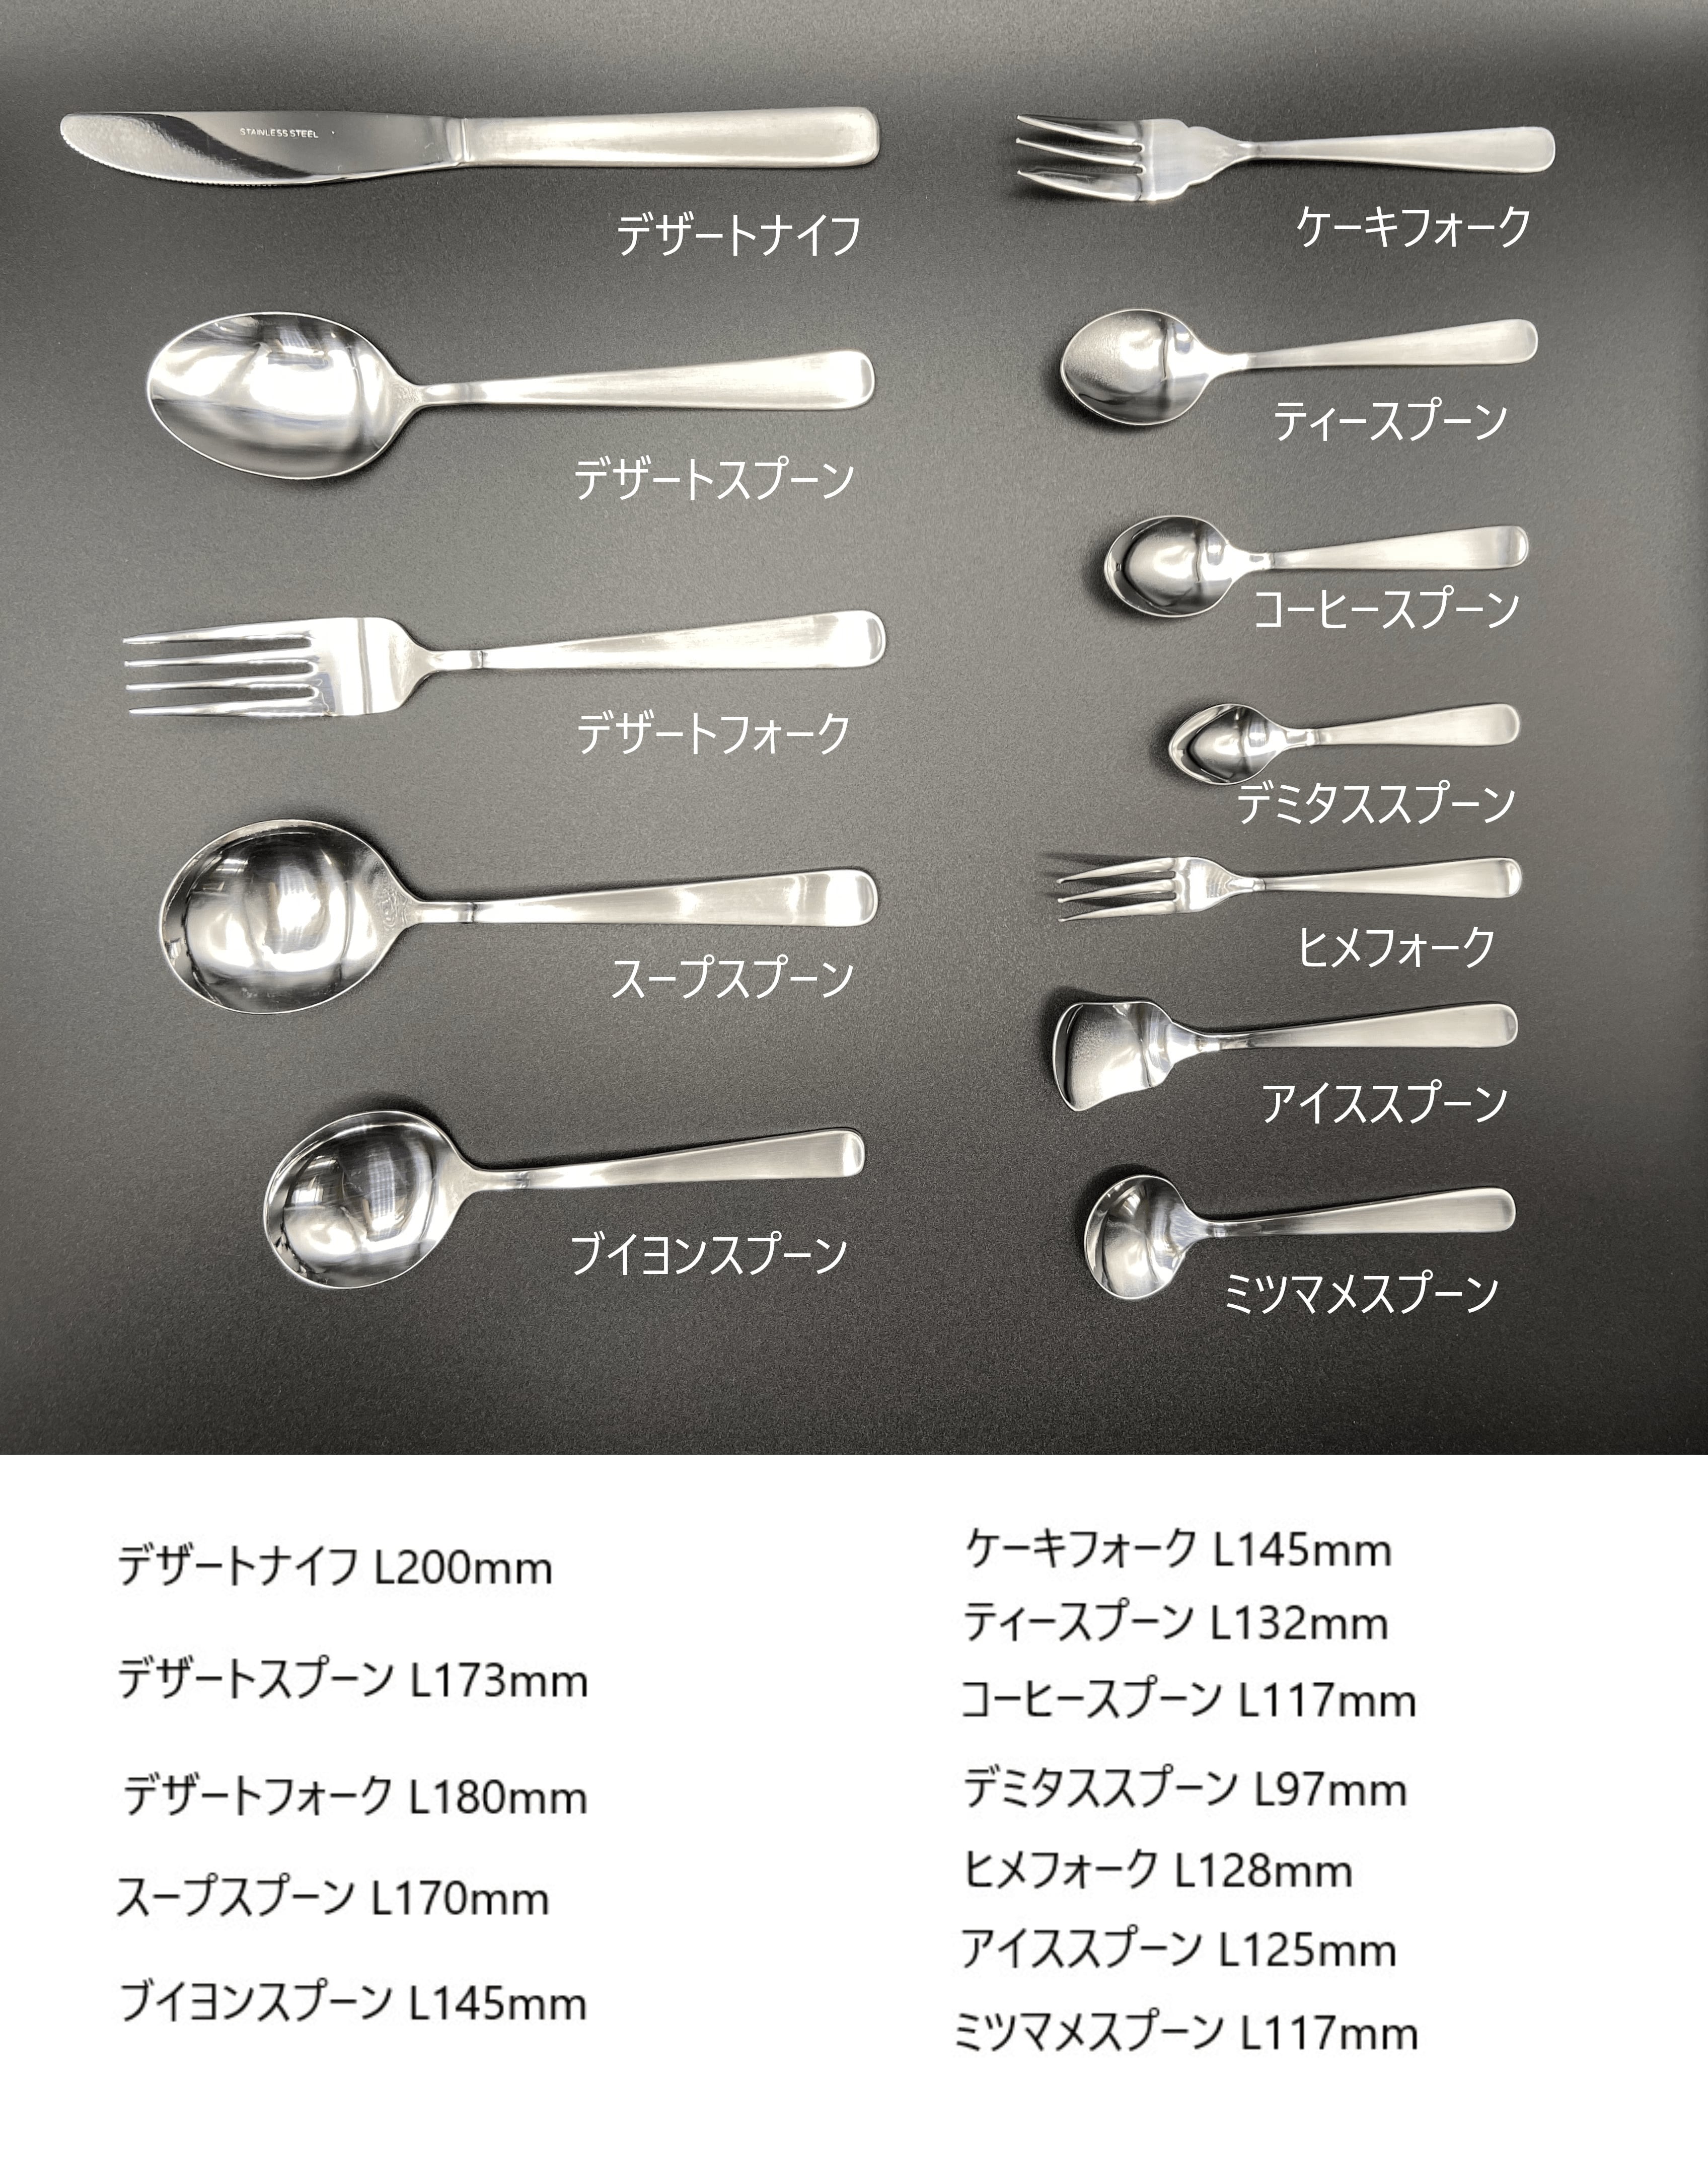  SA18-12ウィンサム デザートナイフ(刃付)